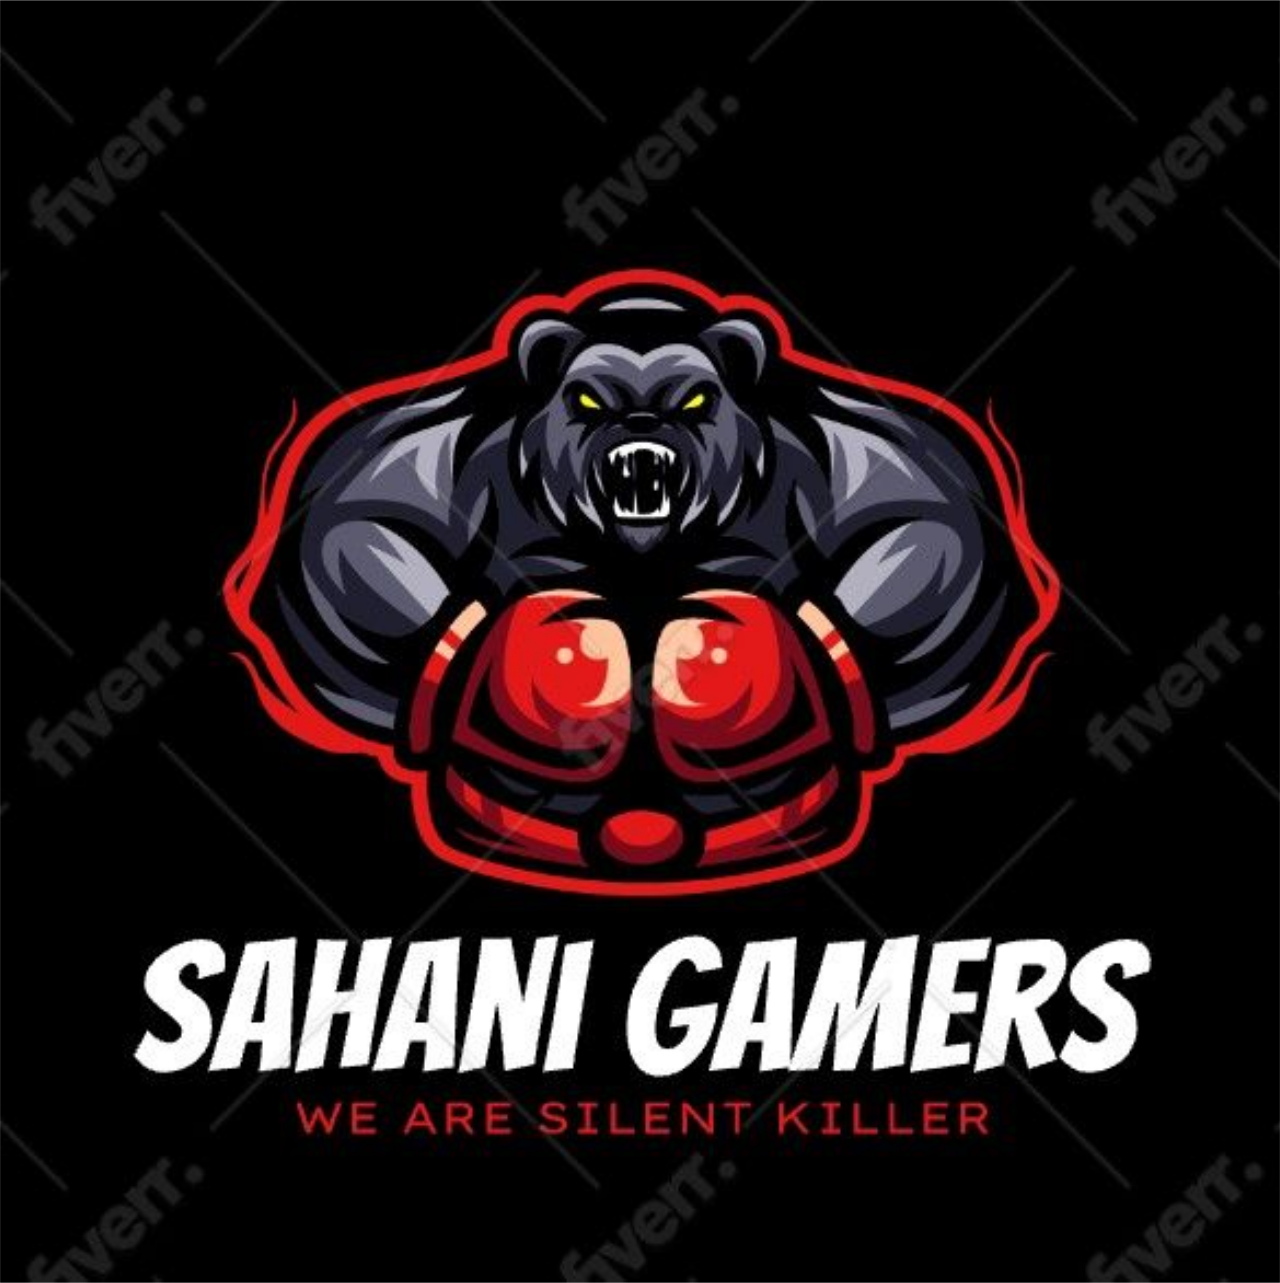 SAHANI GAMERS 's web page